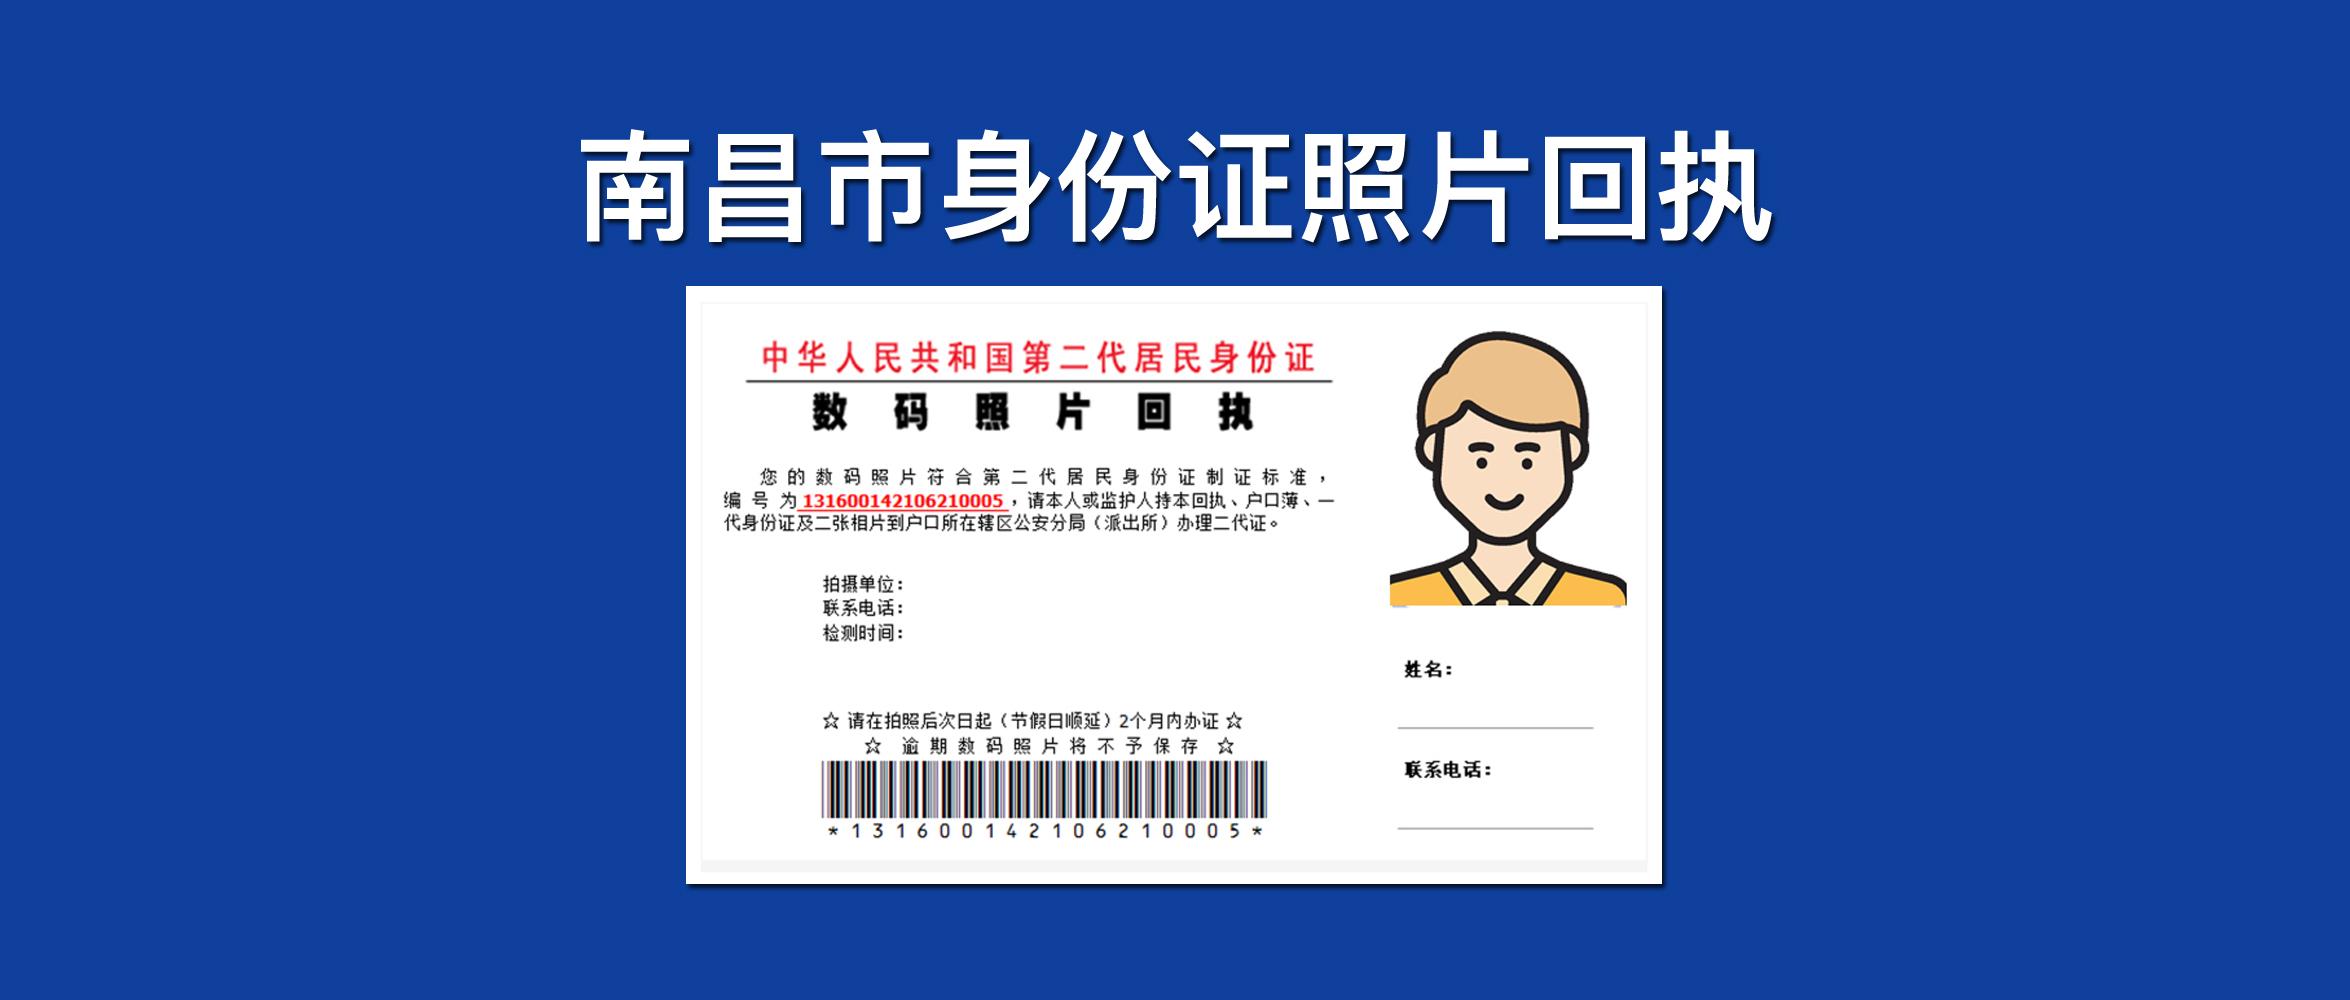 教你用微信获取江西省南昌市身份证照片回执